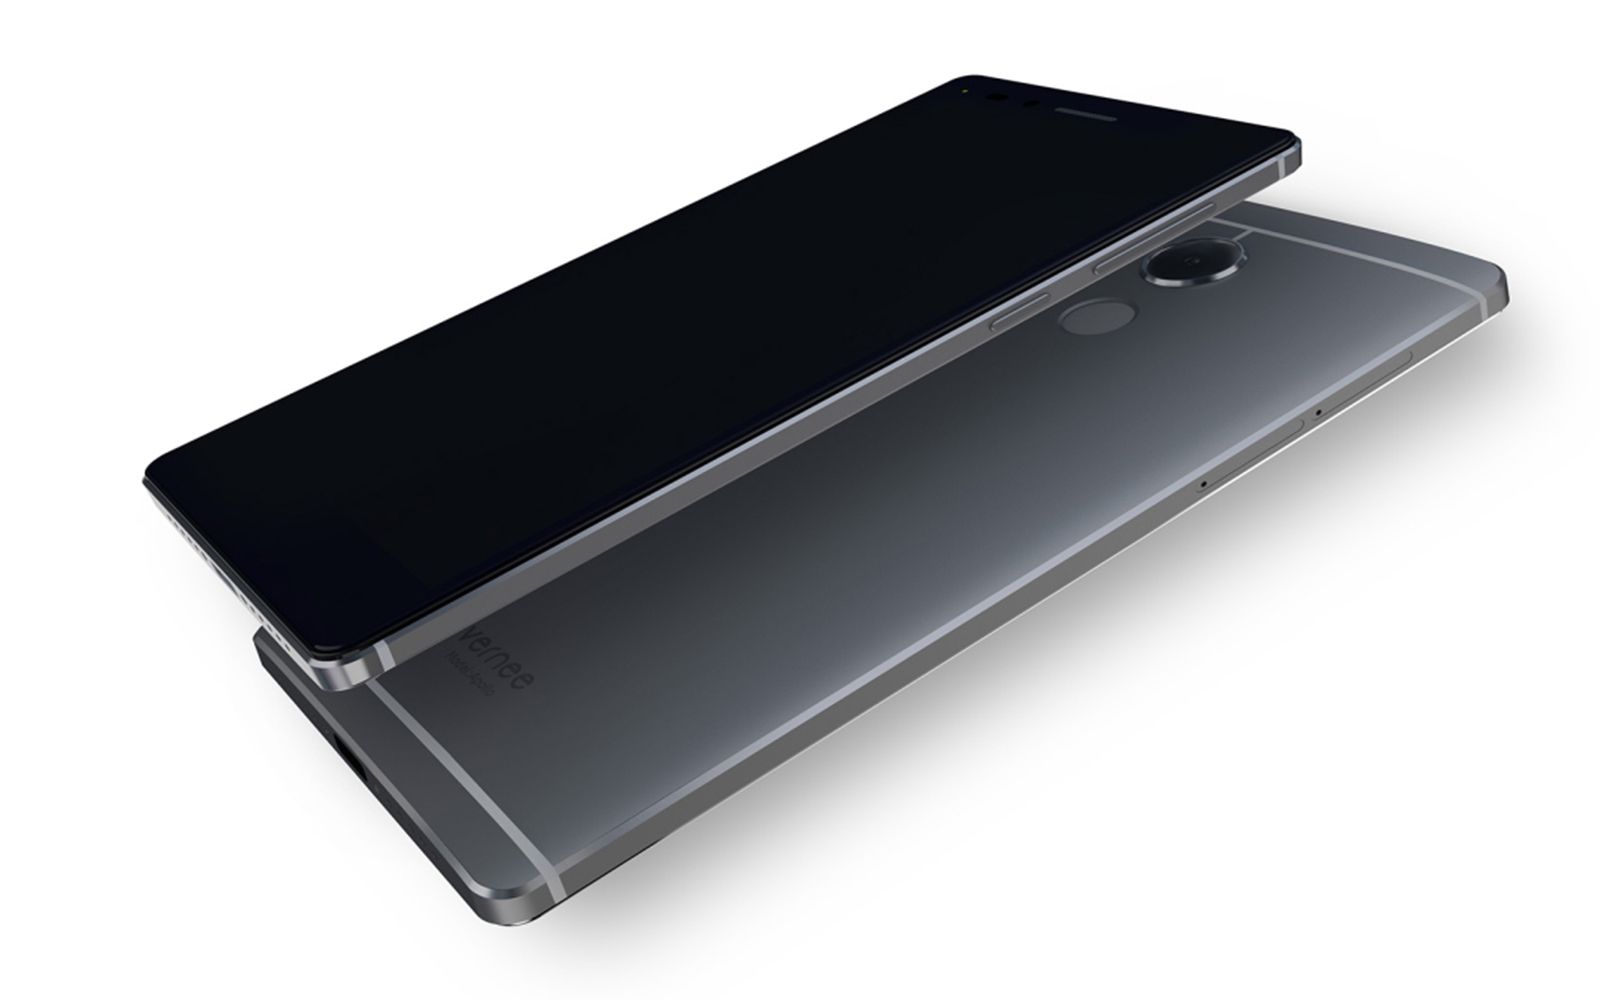 vernee apollo smartphone touts 6gb of ram 10 core processor and more image 2